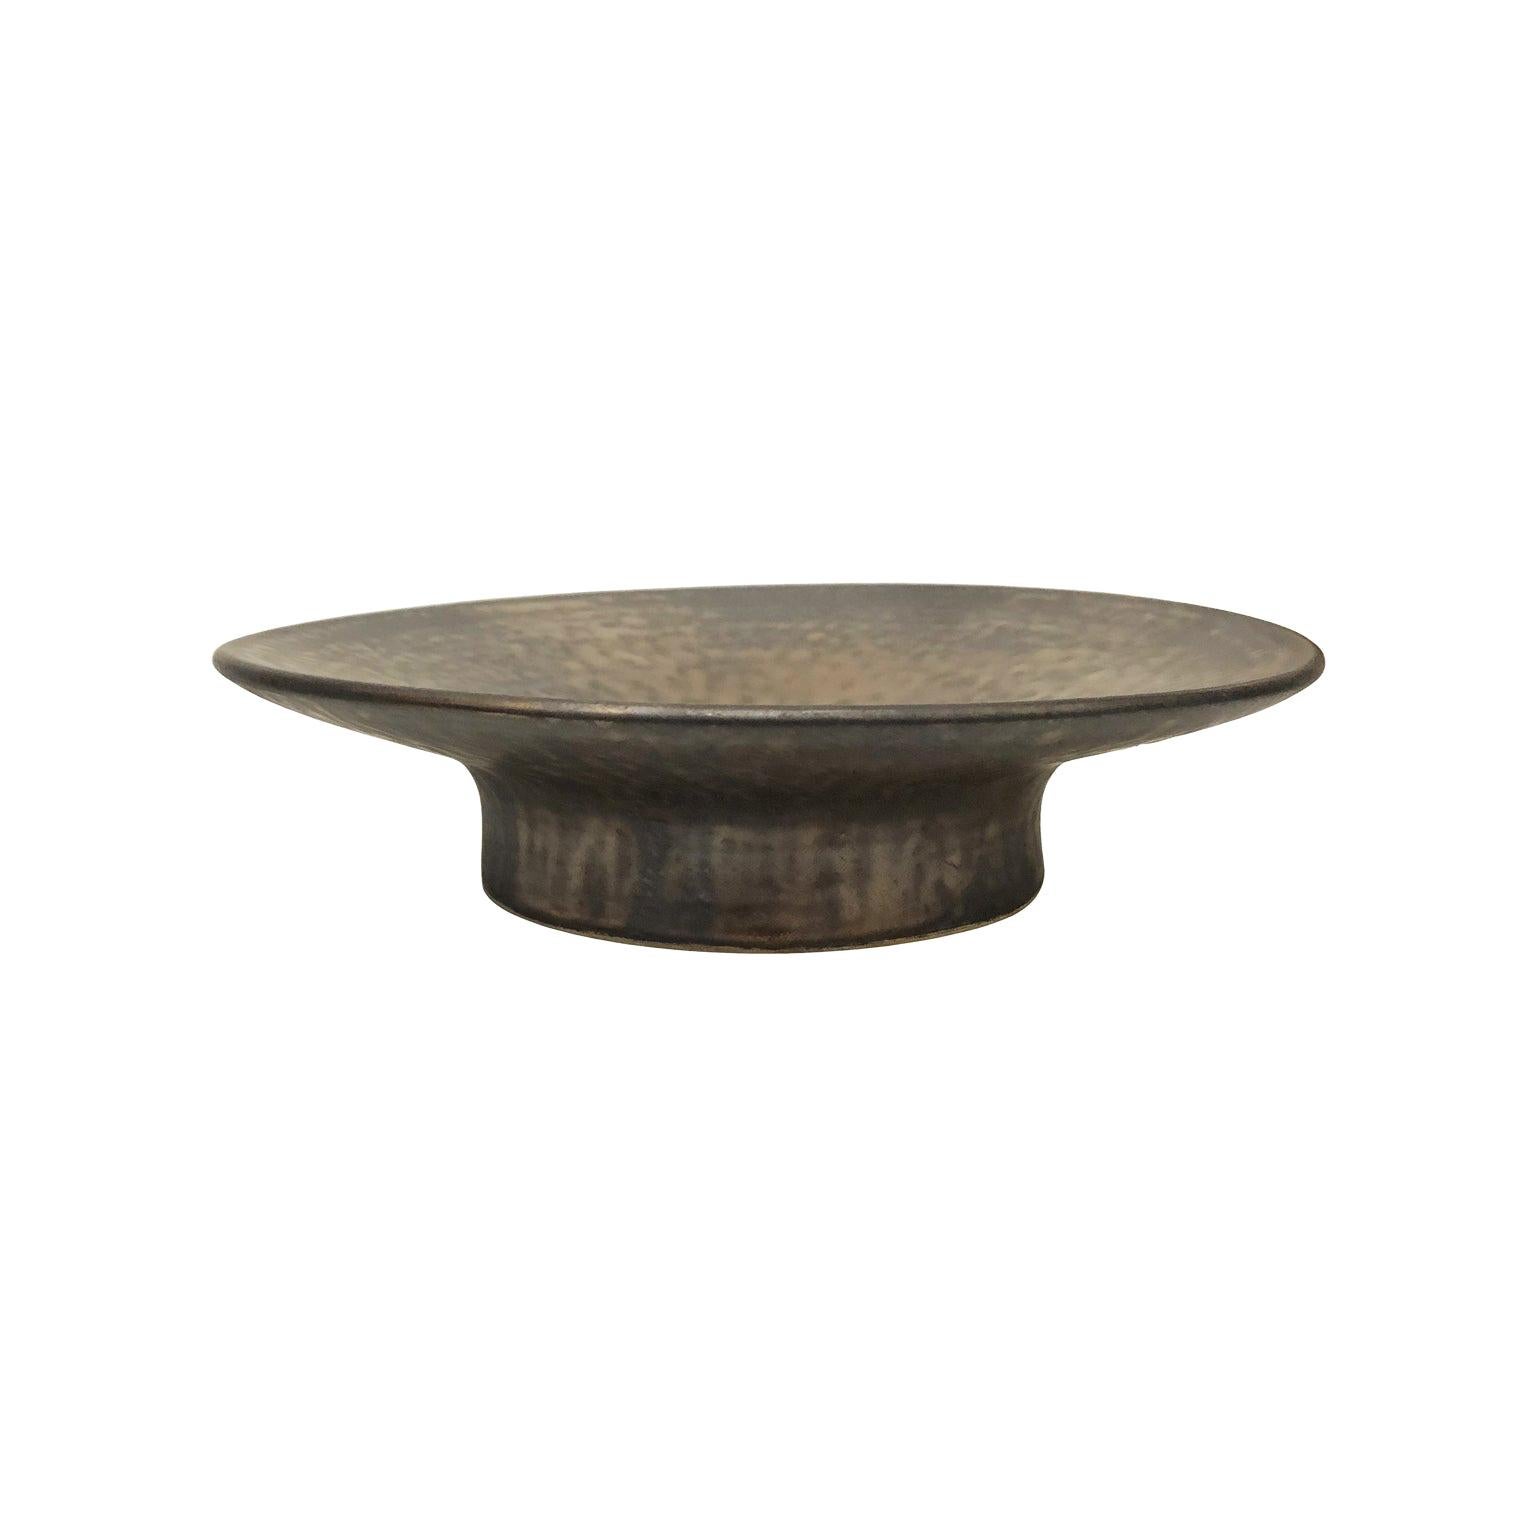 Low Ceramic Pedestal Bowl with Dappled Bronze Glaze by Sandi Fellman For Sale